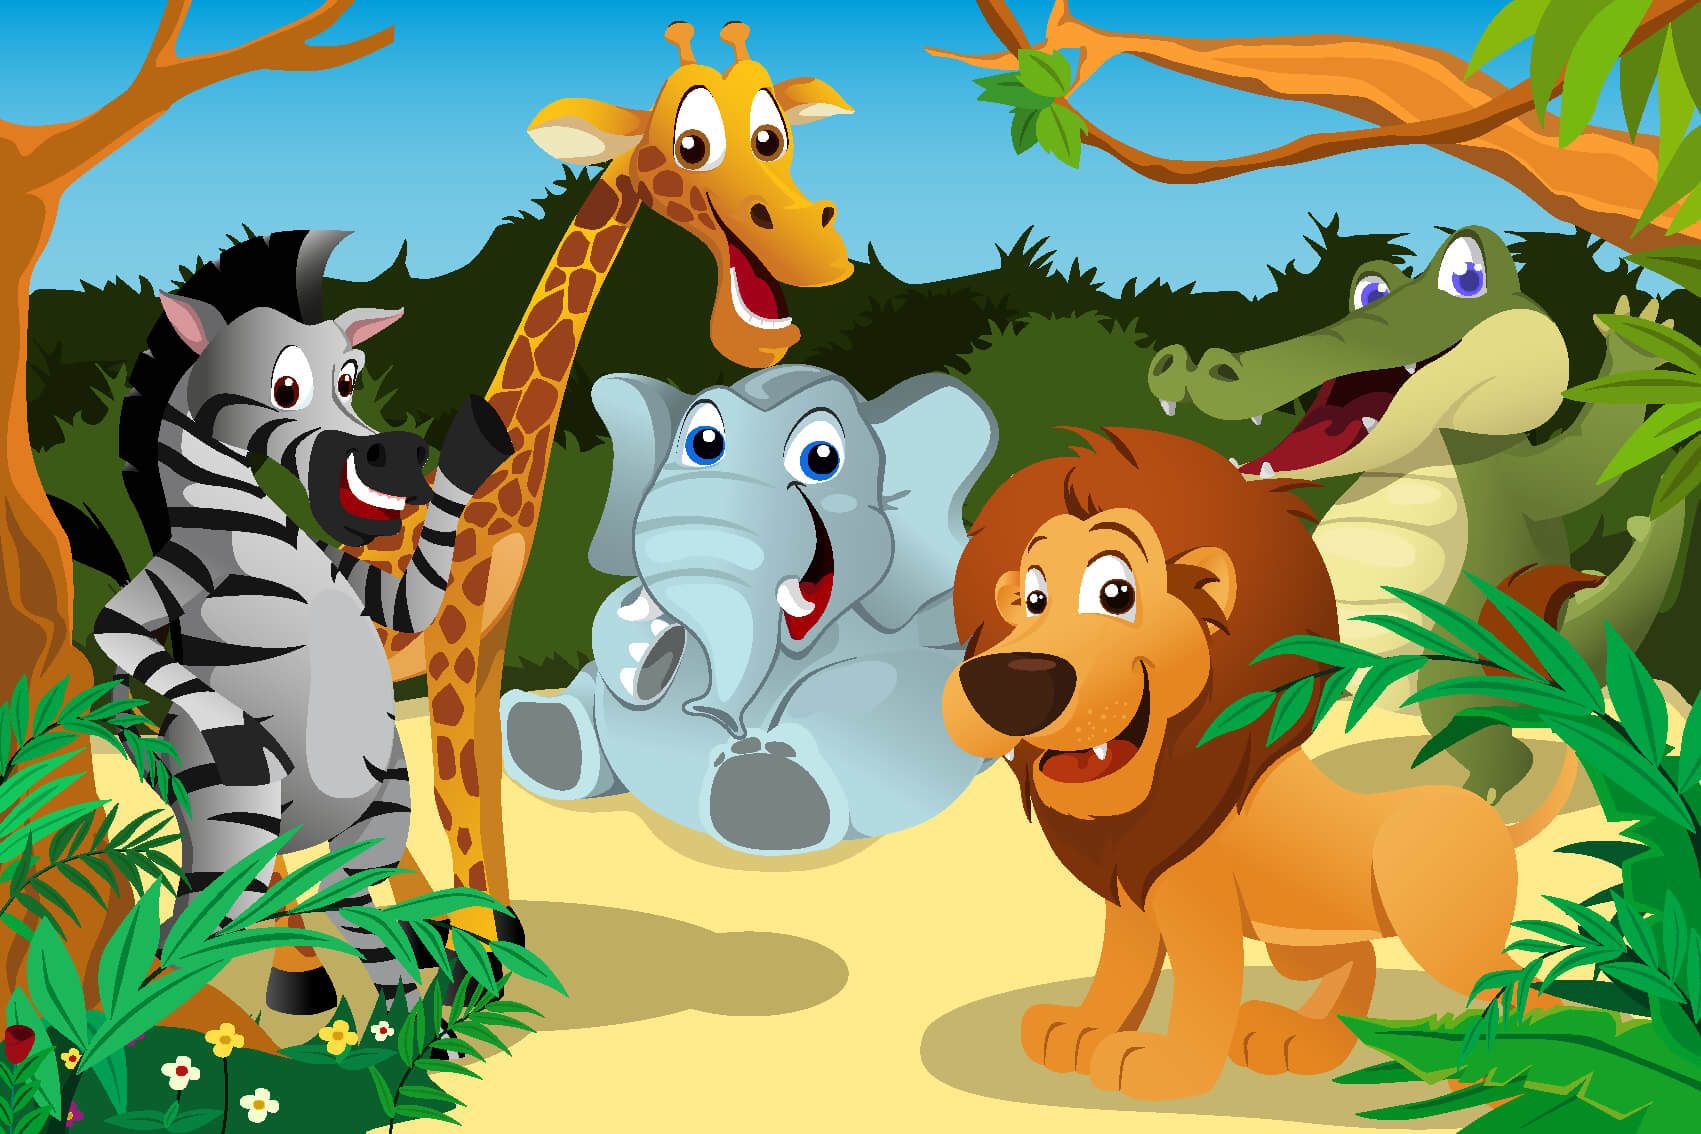 Animaux de Safari - Animaux sauvages joyeux - Chambre d'enfants